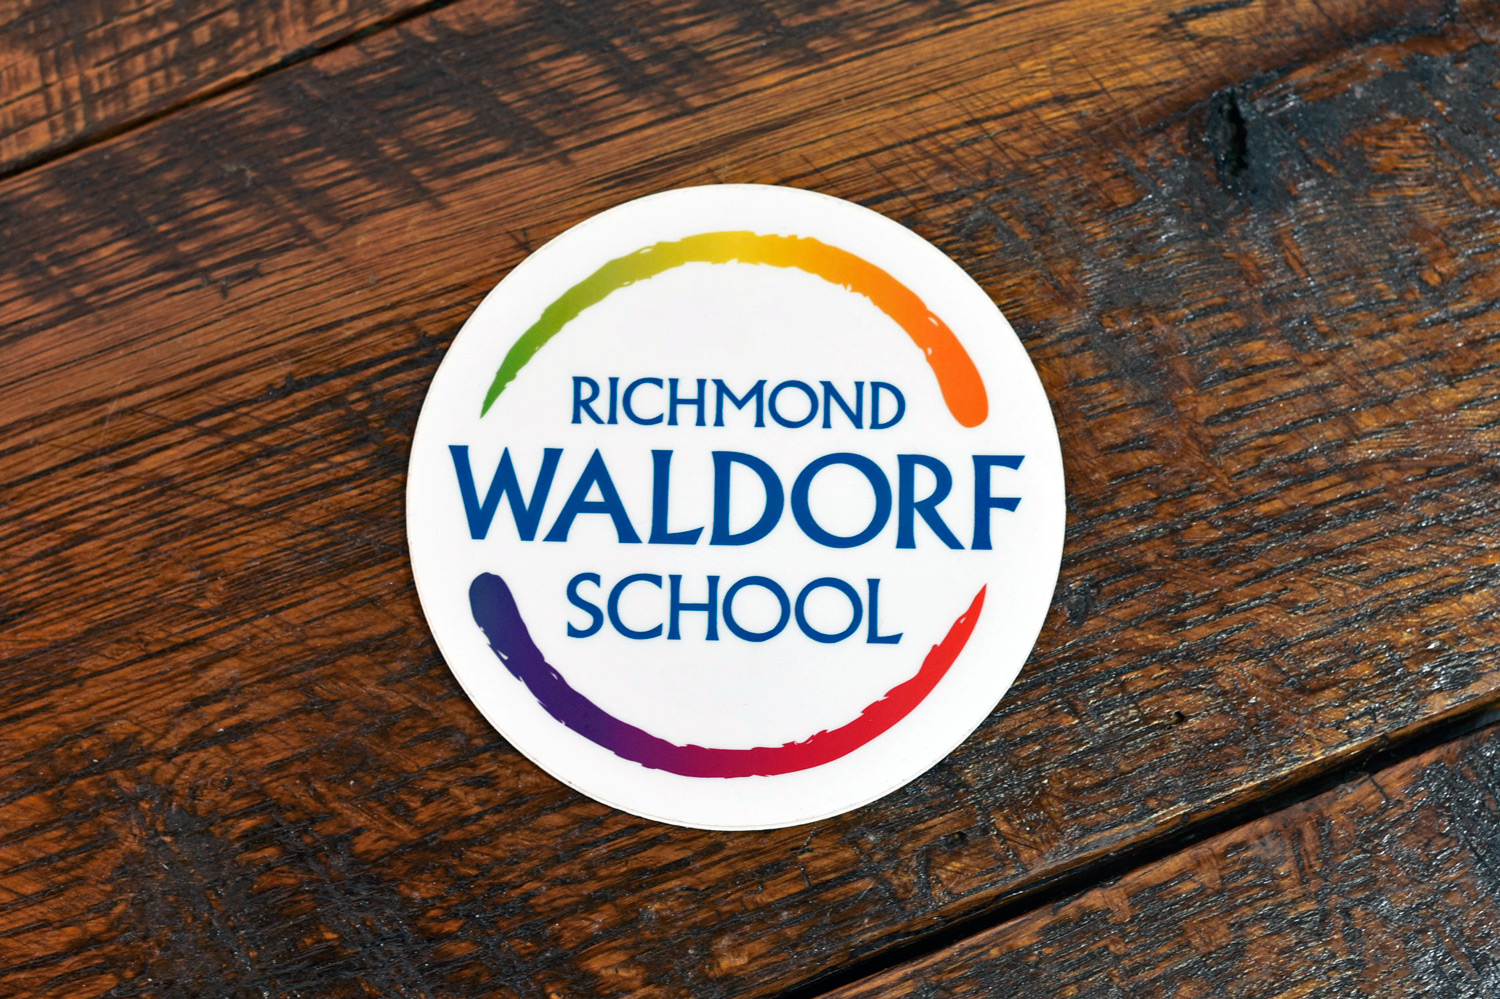 Richmond Waldorf School sticker